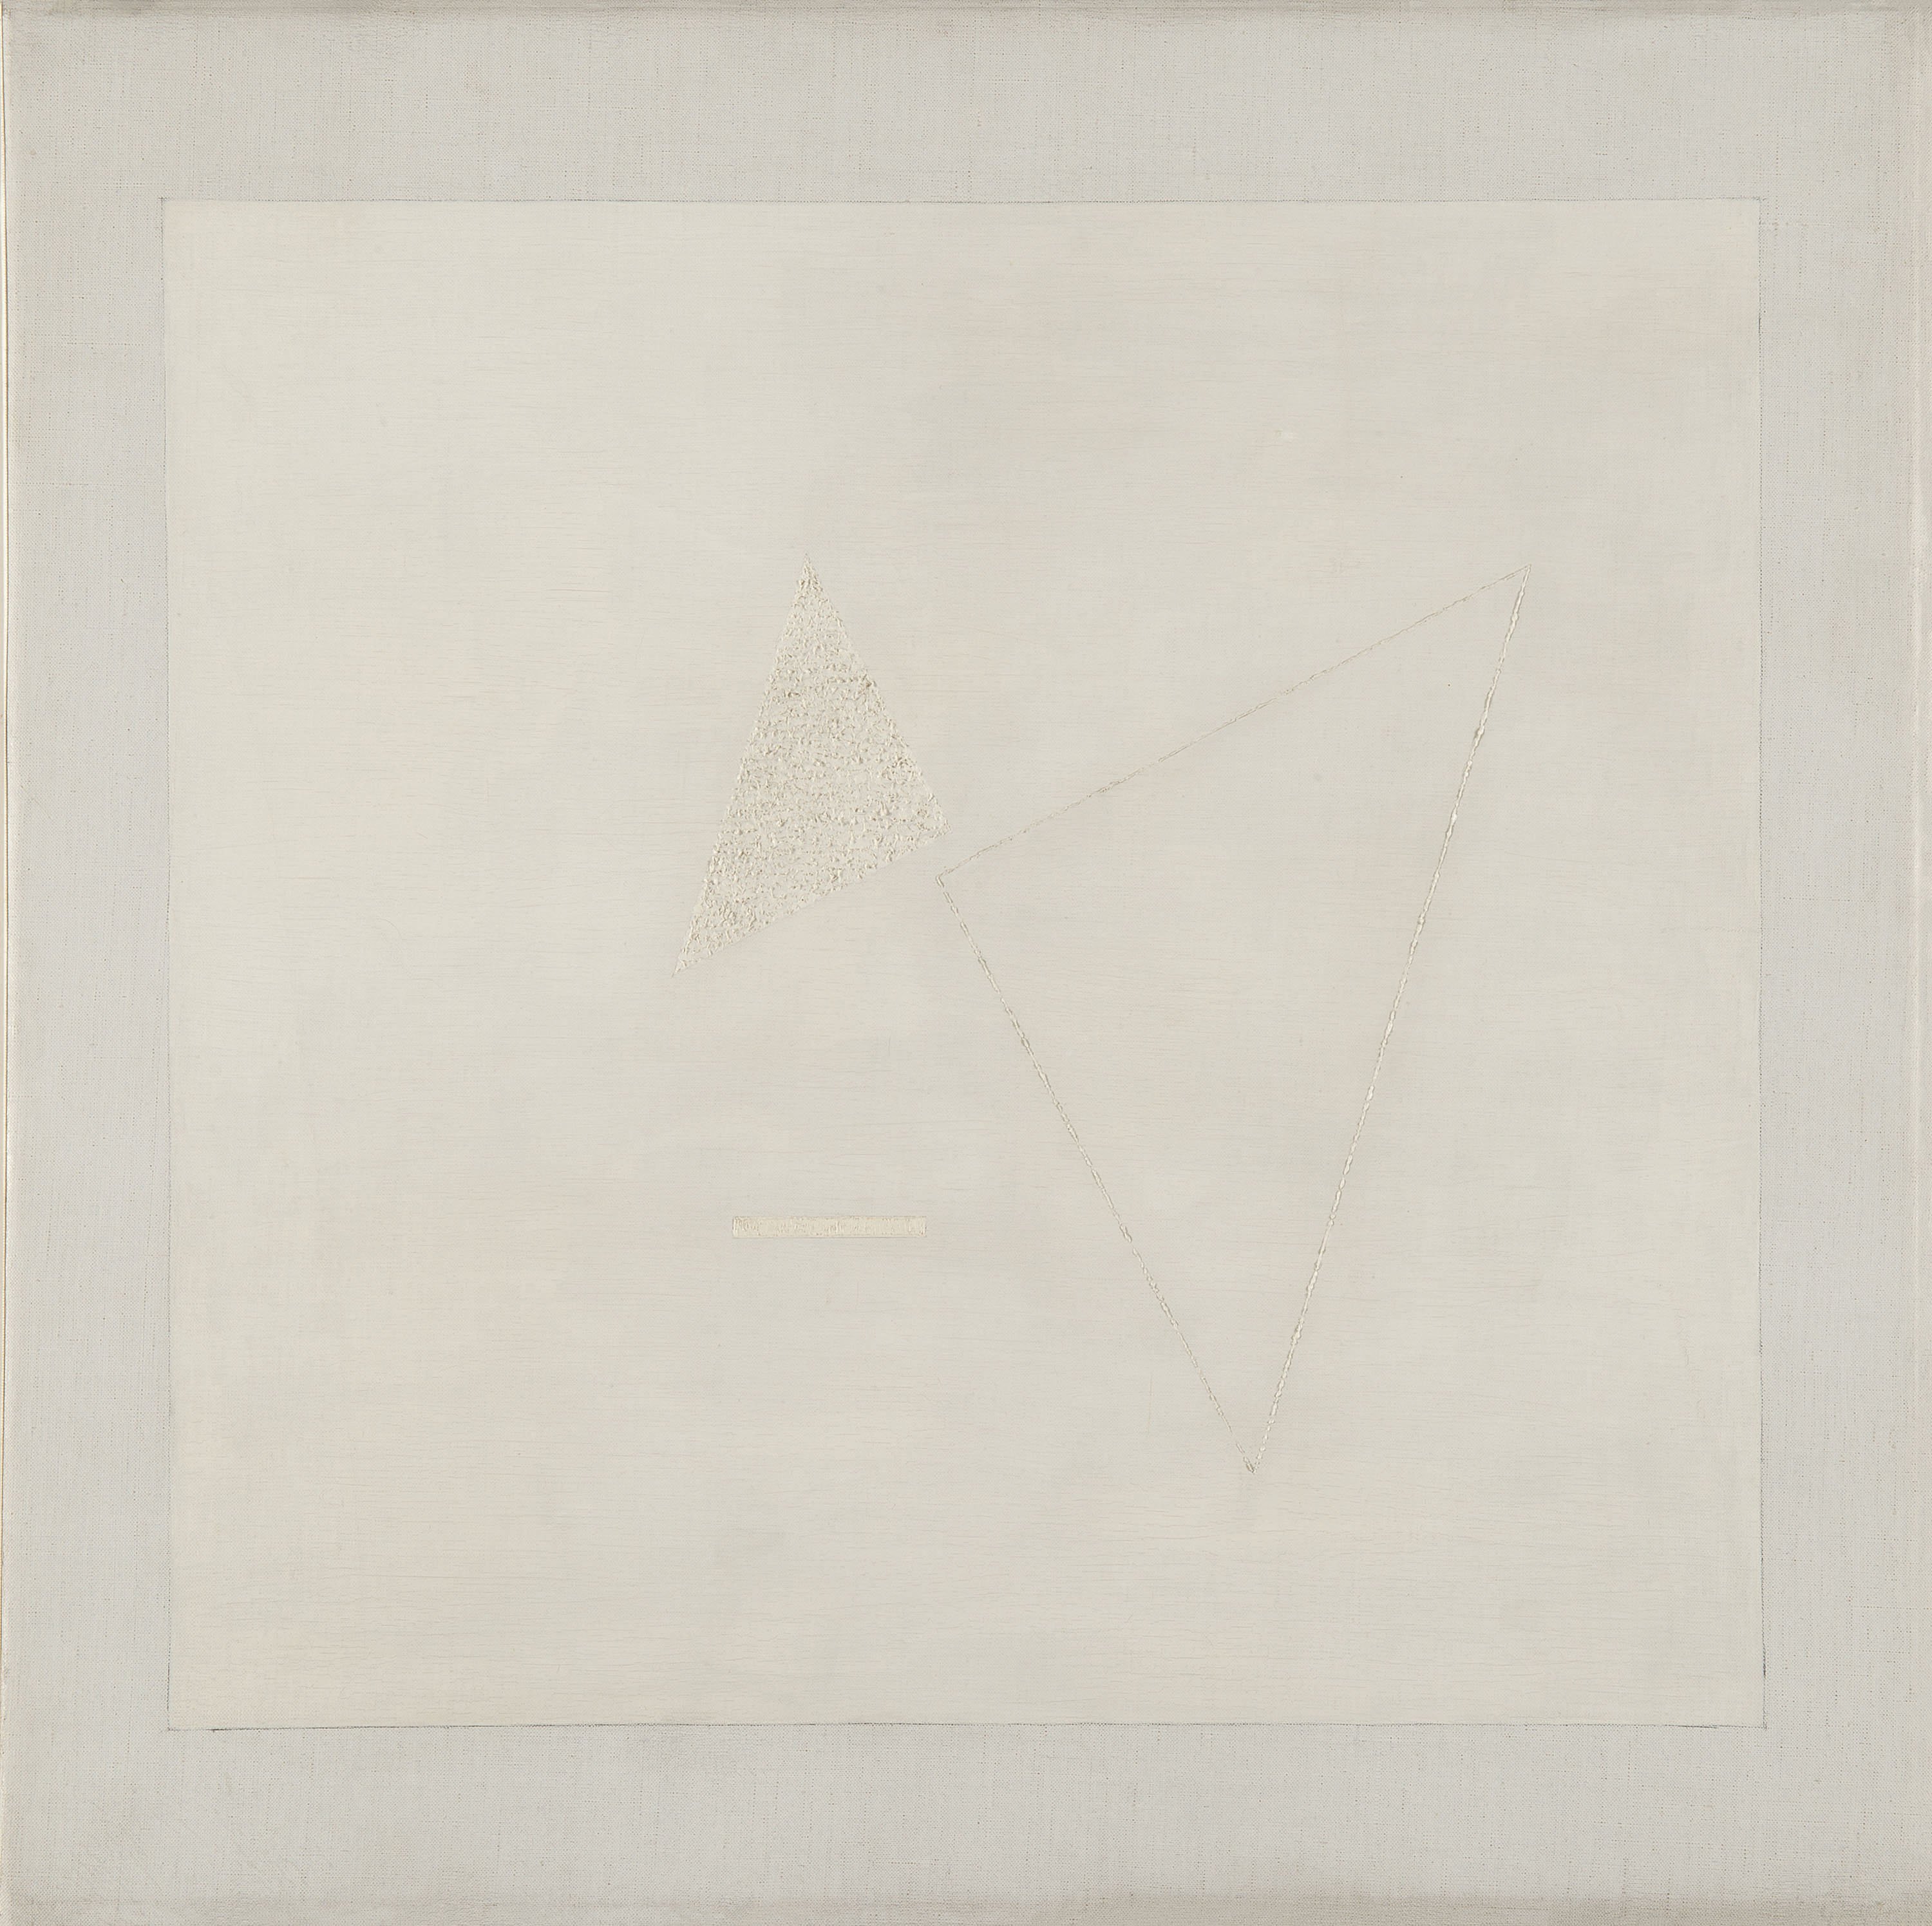 Composition No. 104. White on White. Composición nº 104. Blanco sobre blanco, 1936